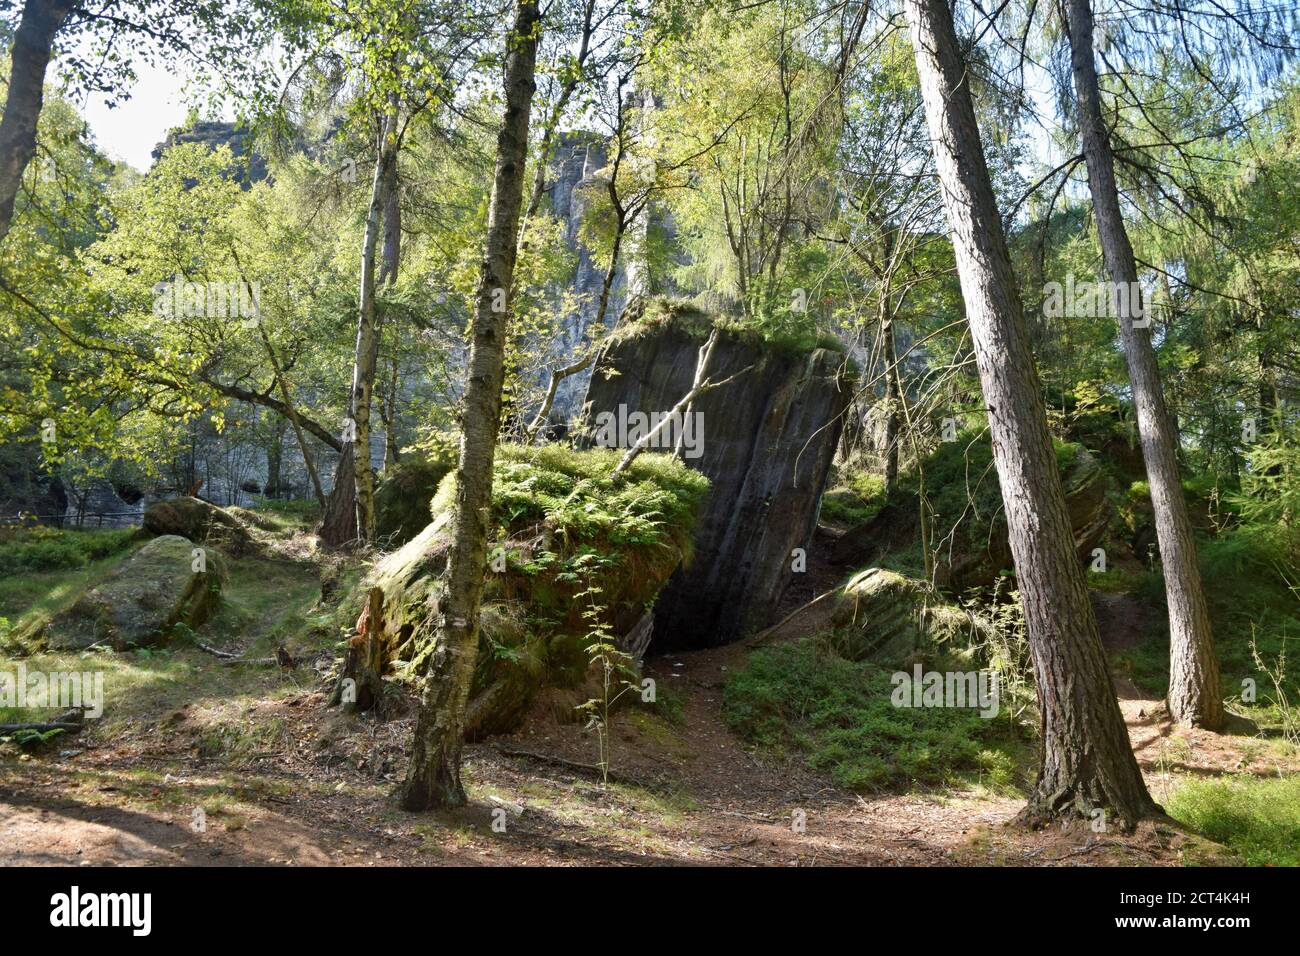 Le rocce di Tisa o pareti di Tisa sono un noto gruppo di rocce nella Svizzera Boema occidentale. E' la regione con colonne rocciose alte fino a 30 m. Foto Stock